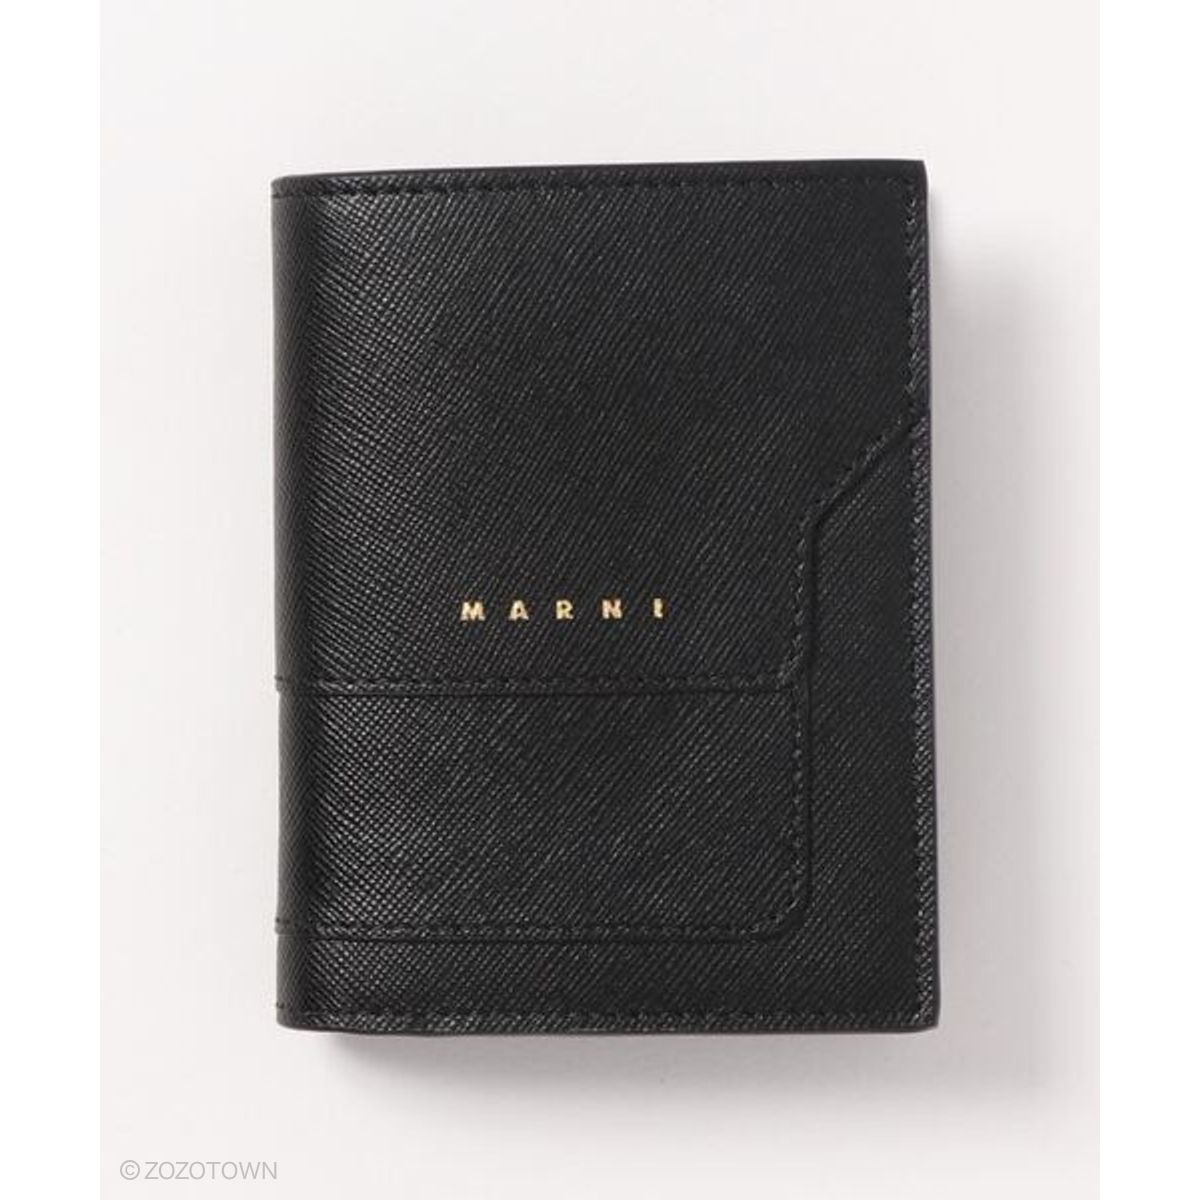 【MARNI】TRUNK / バイフォールドウォレット 財布 レザー マルニ MARNI ウォレット カードケース